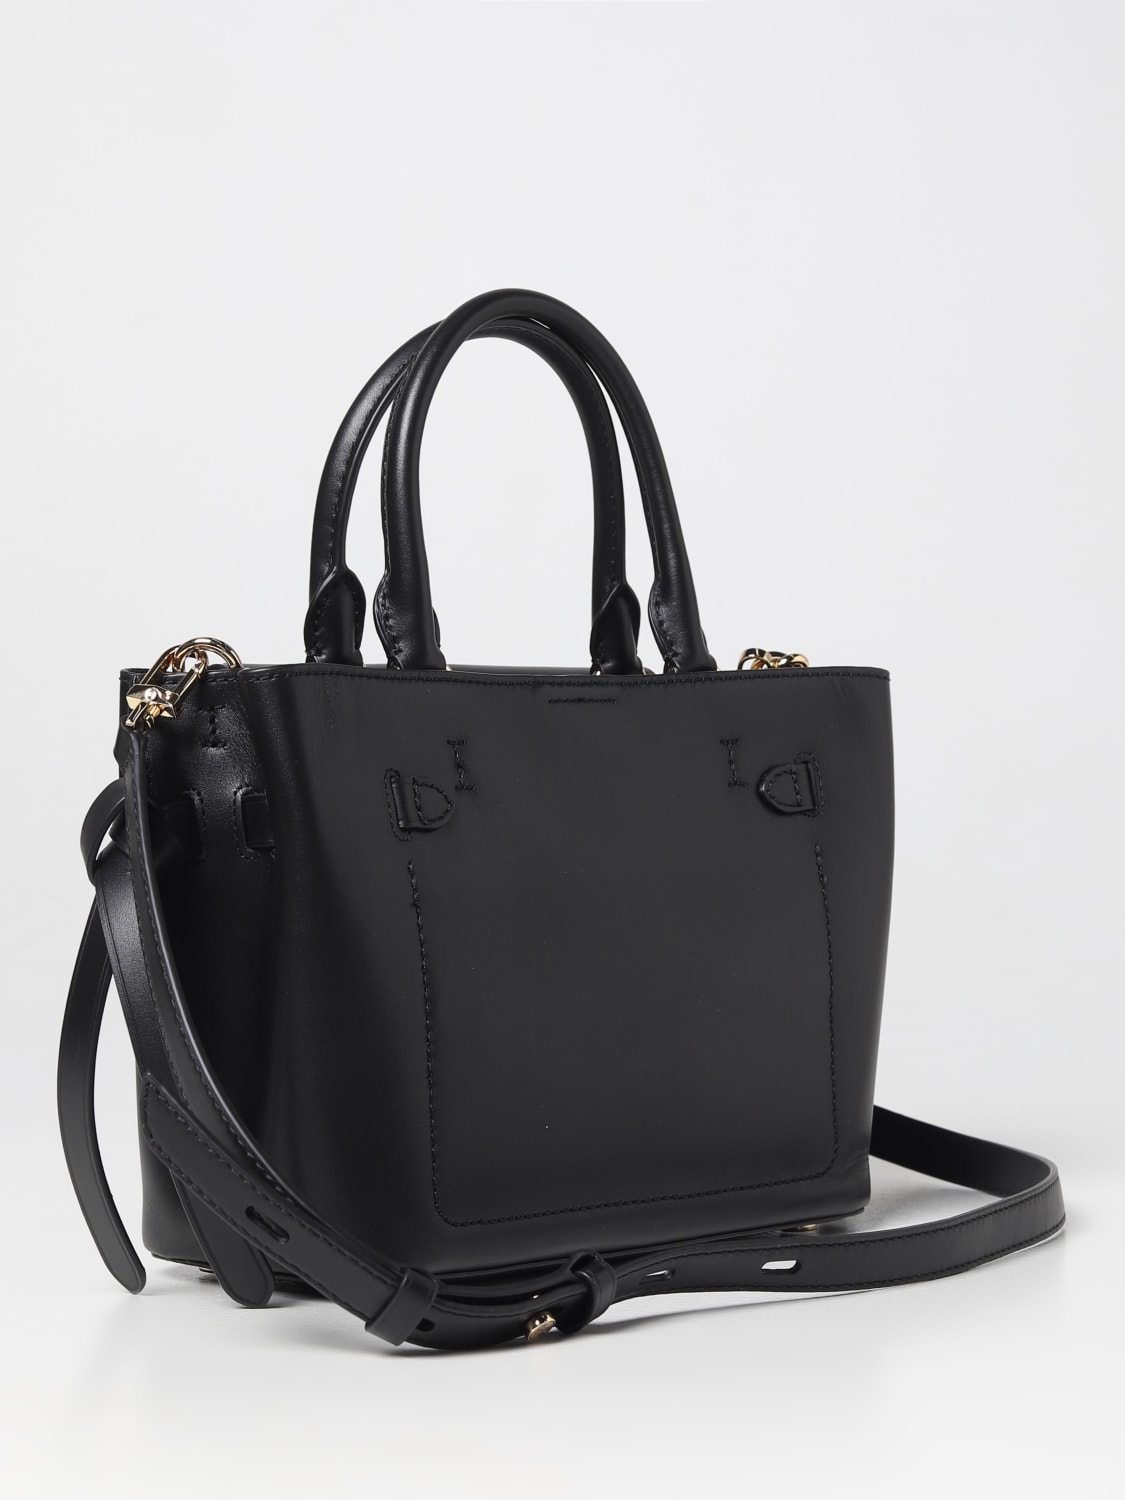 MICHAEL KORS: handbag for woman - Black | Michael Kors handbag ...